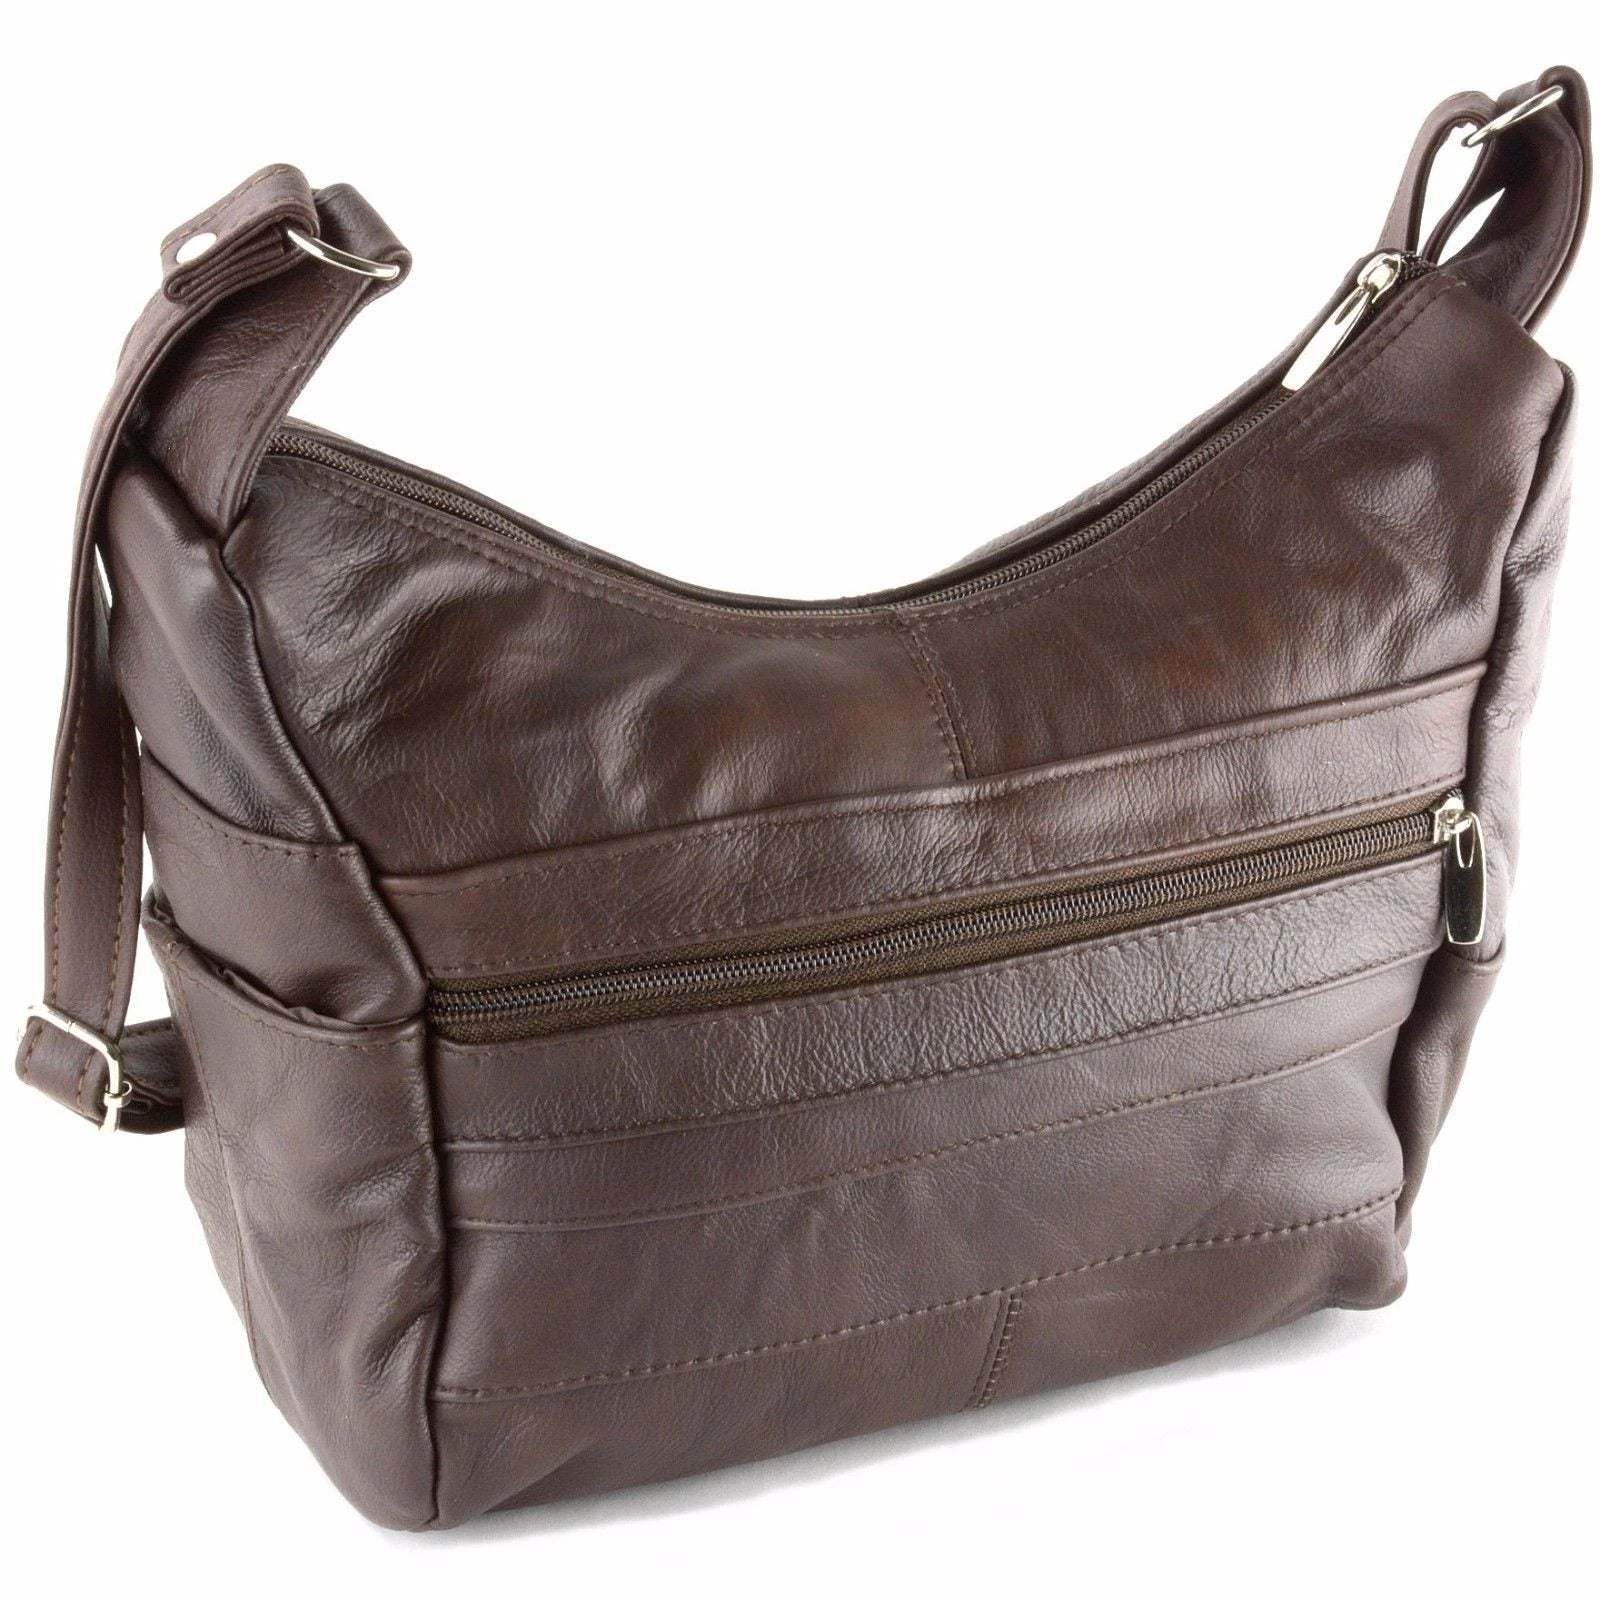 Women's Big Capacity Leather Hobo Bag